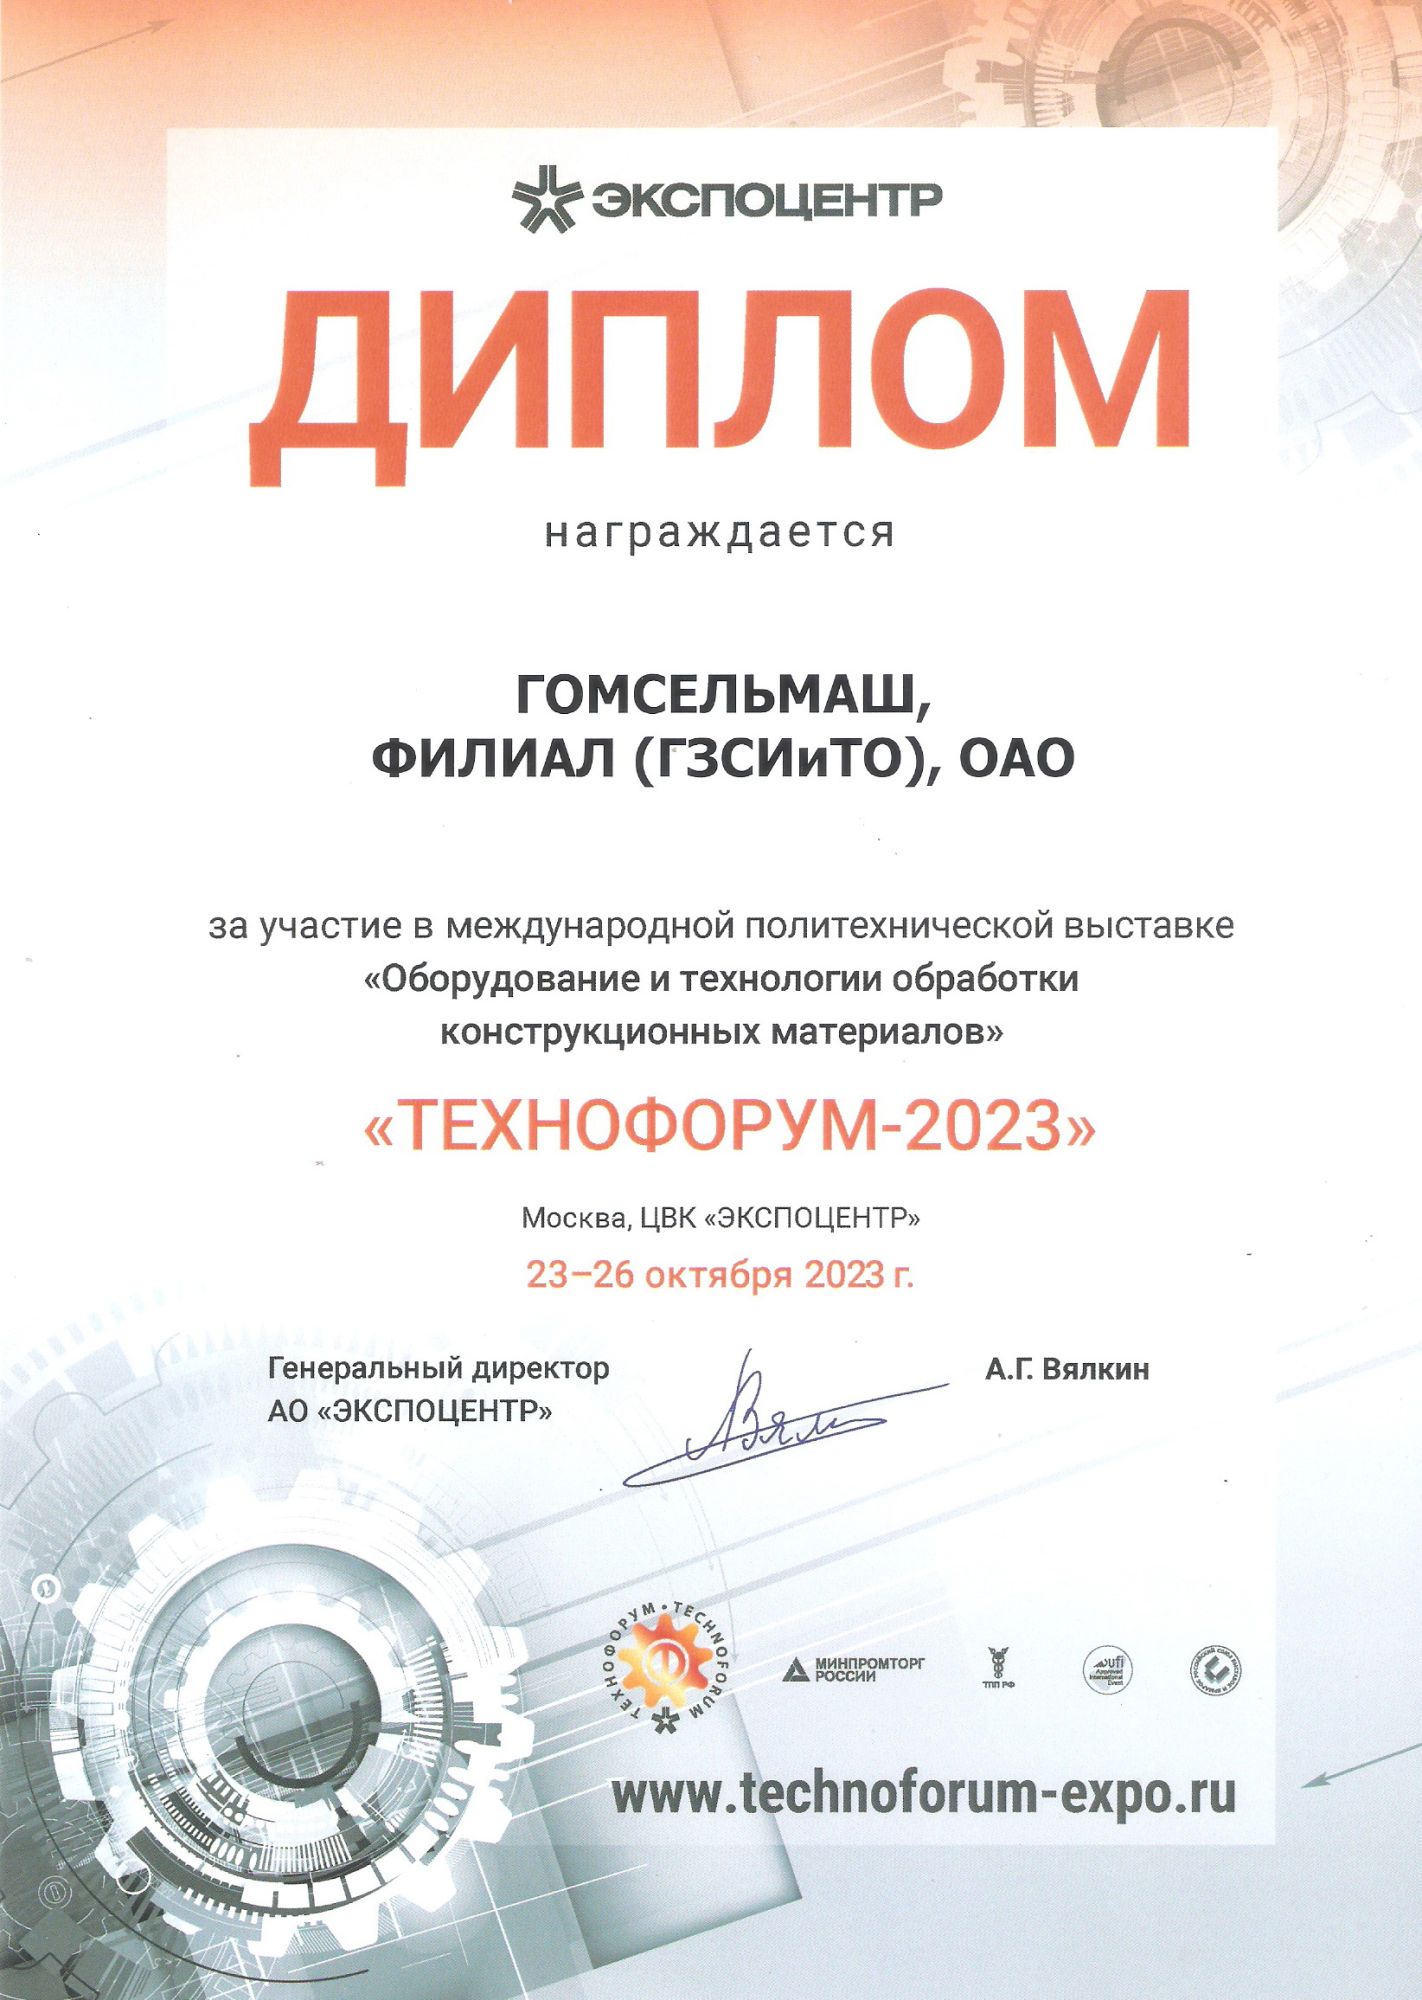 Филиал ГЗСИиТО награжден ДИПЛОМОМ за активное участие в выставке ТЕХНОФОРУМ-2023